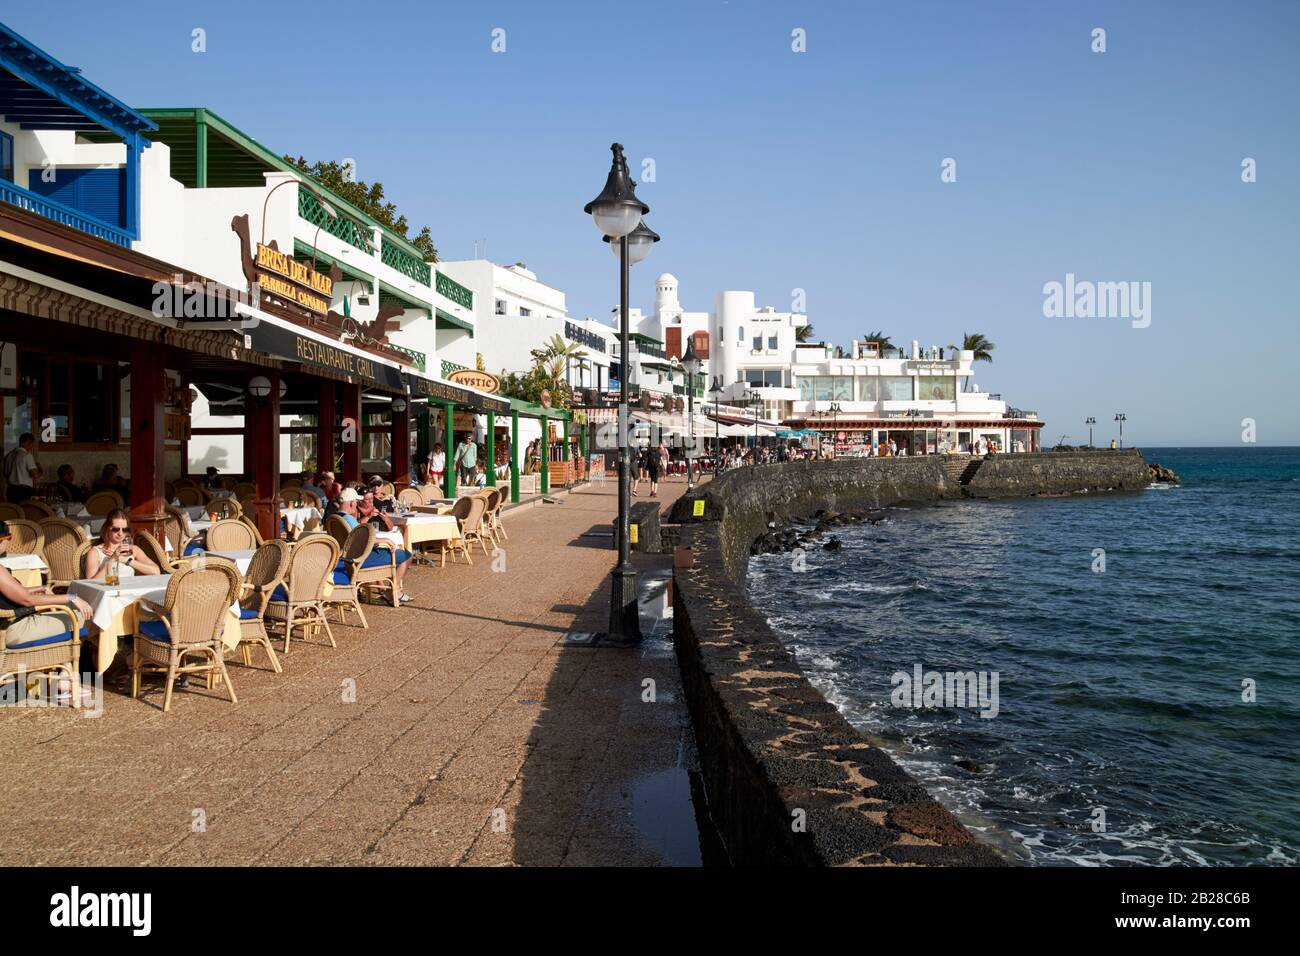 AV maritima playa blanca passeggiata lungomare con negozi e ristoranti durante la pausa invernale sole giorno Lanzarote isole canarie spagna Foto Stock